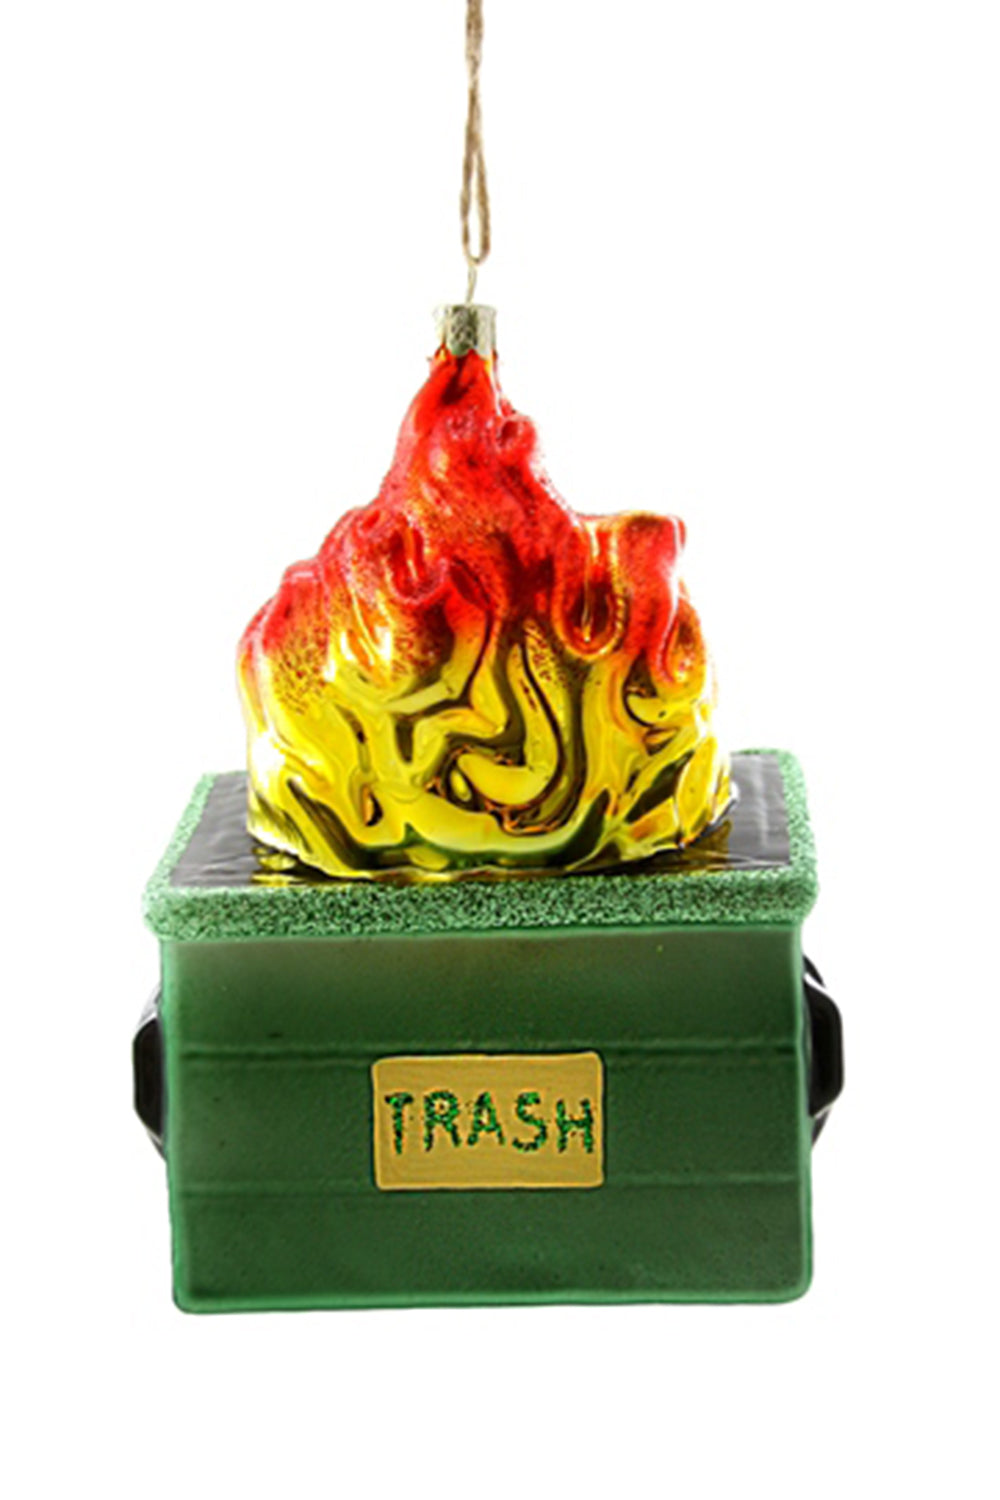 Glass Ornament - Green Dumpster Fire